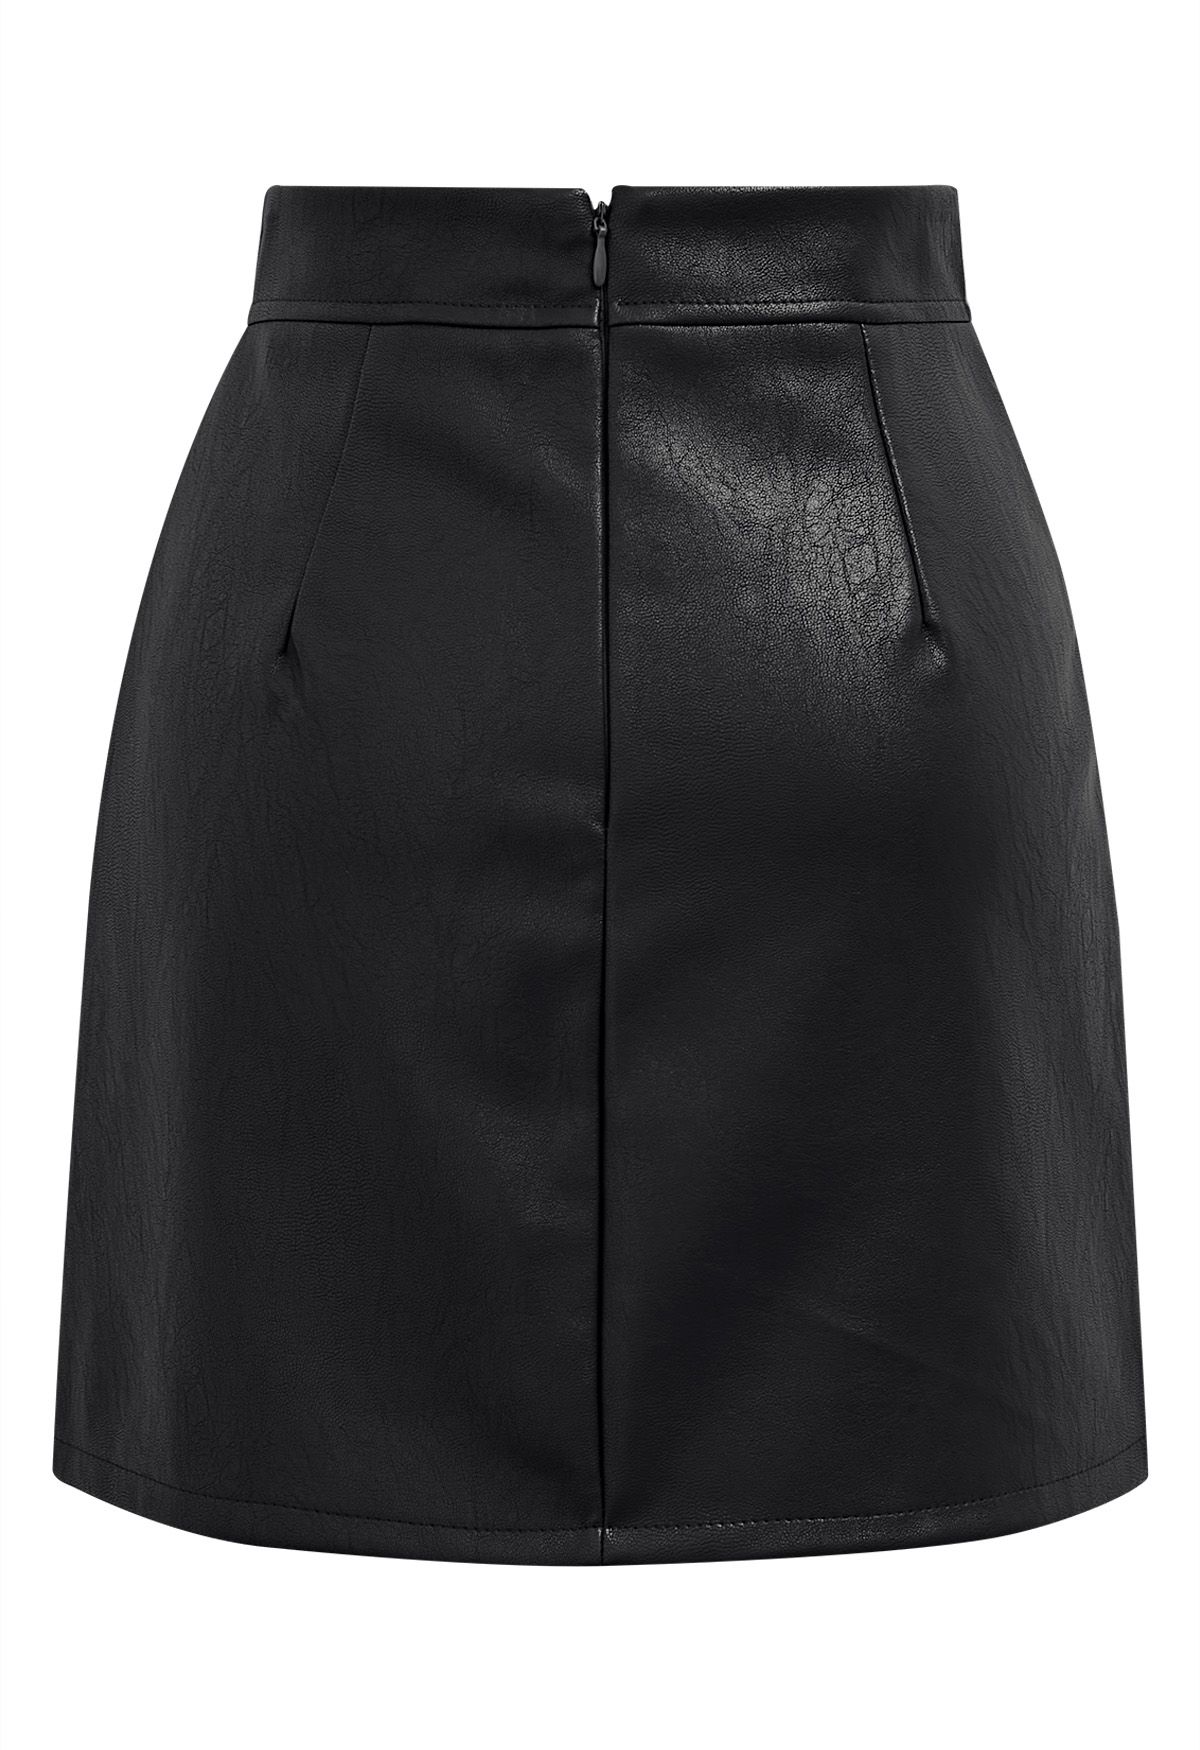 Minifalda con detalle de pliegues de piel sintética en negro